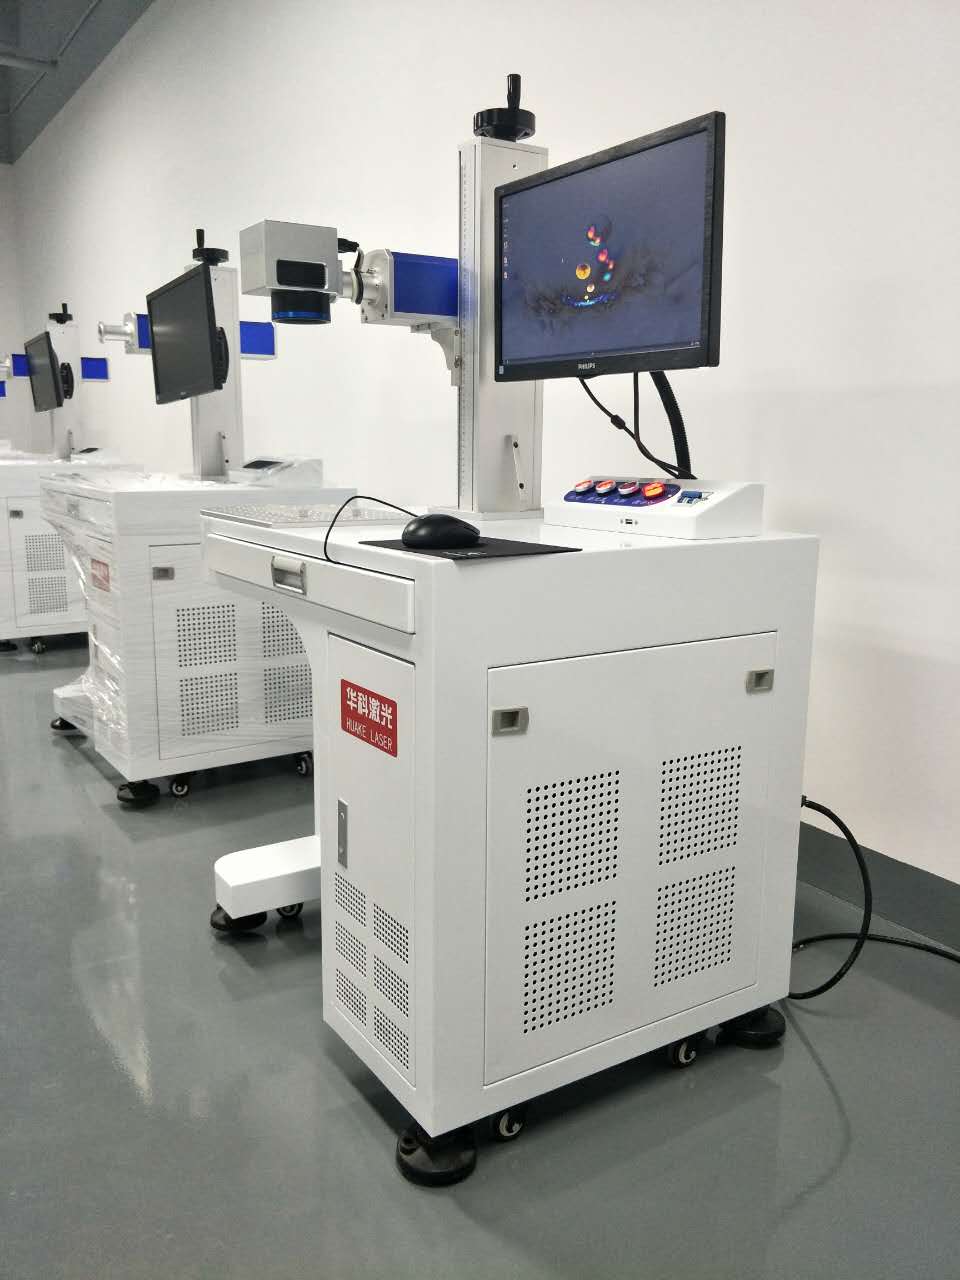 坂田激光打标机 专业生产激光打标机  厂家直销激光打标机 坂田激光打标机 HK-20 系列图片